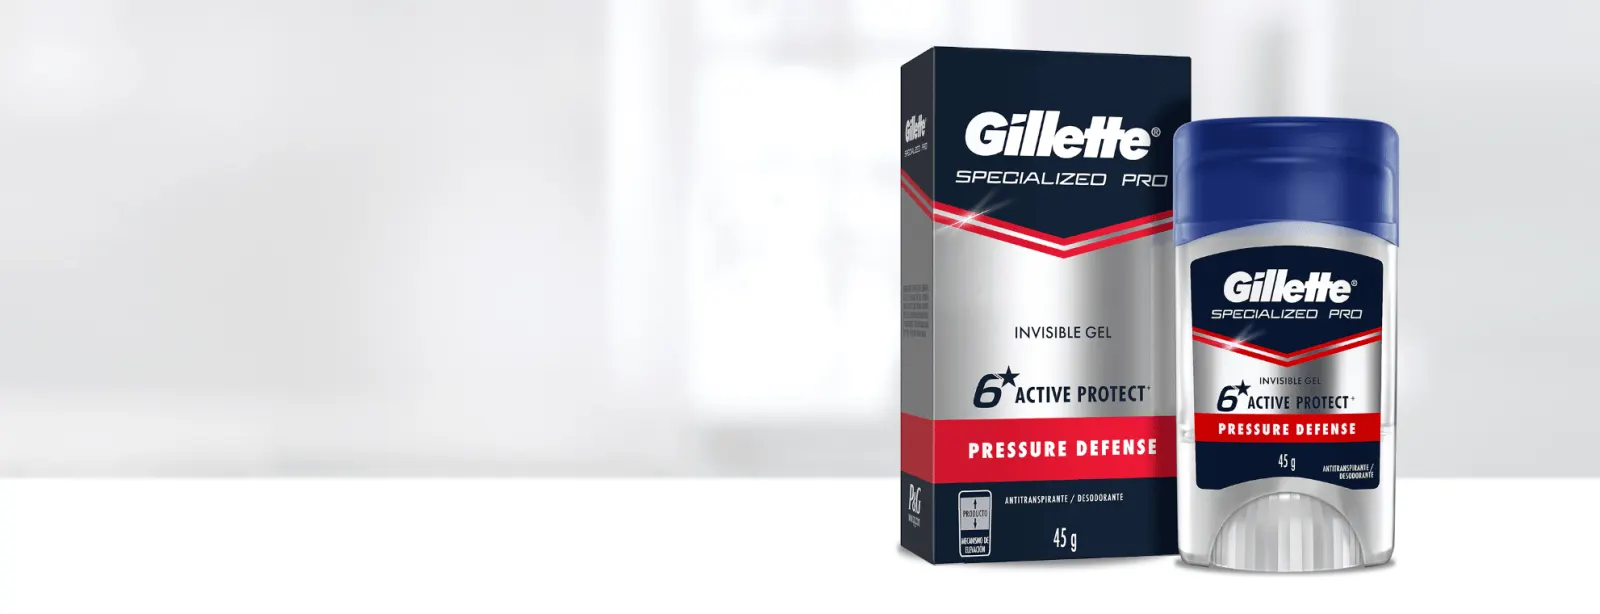 Specialized Pro Gel para hombre de Gillette que te ofrece máxima protección antitranspirante invisible